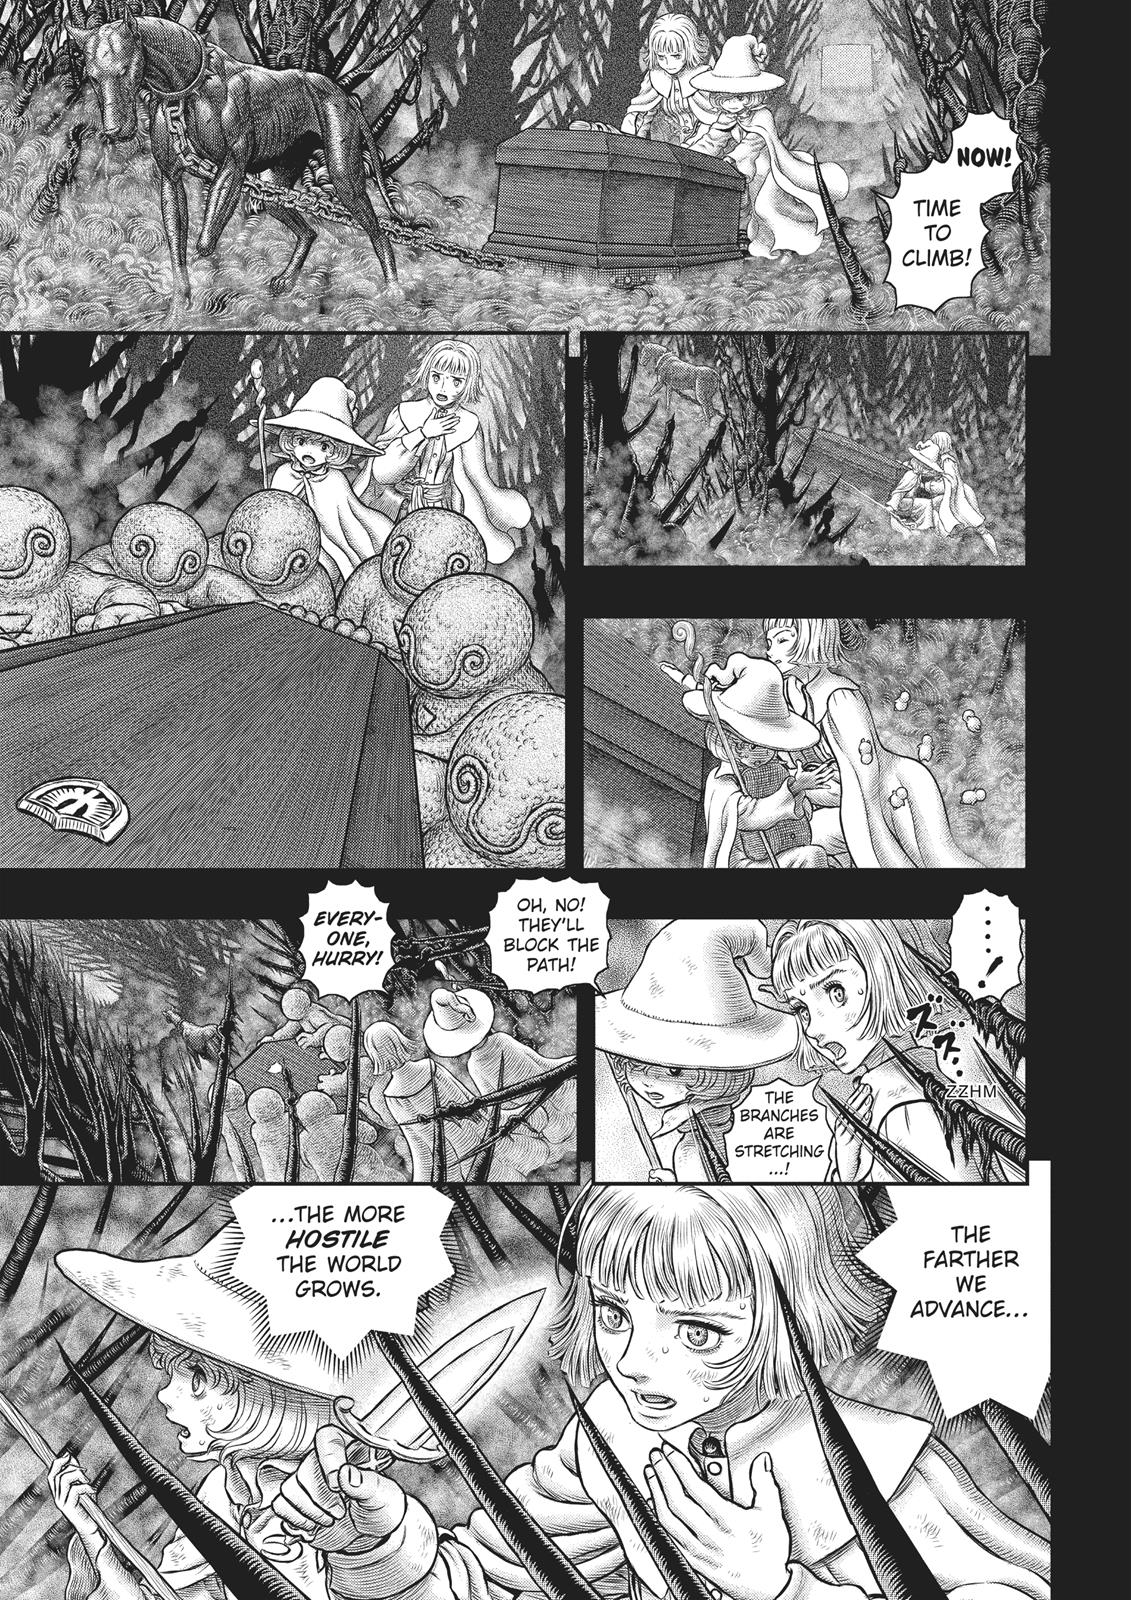 Berserk Manga Chapter 351 image 28